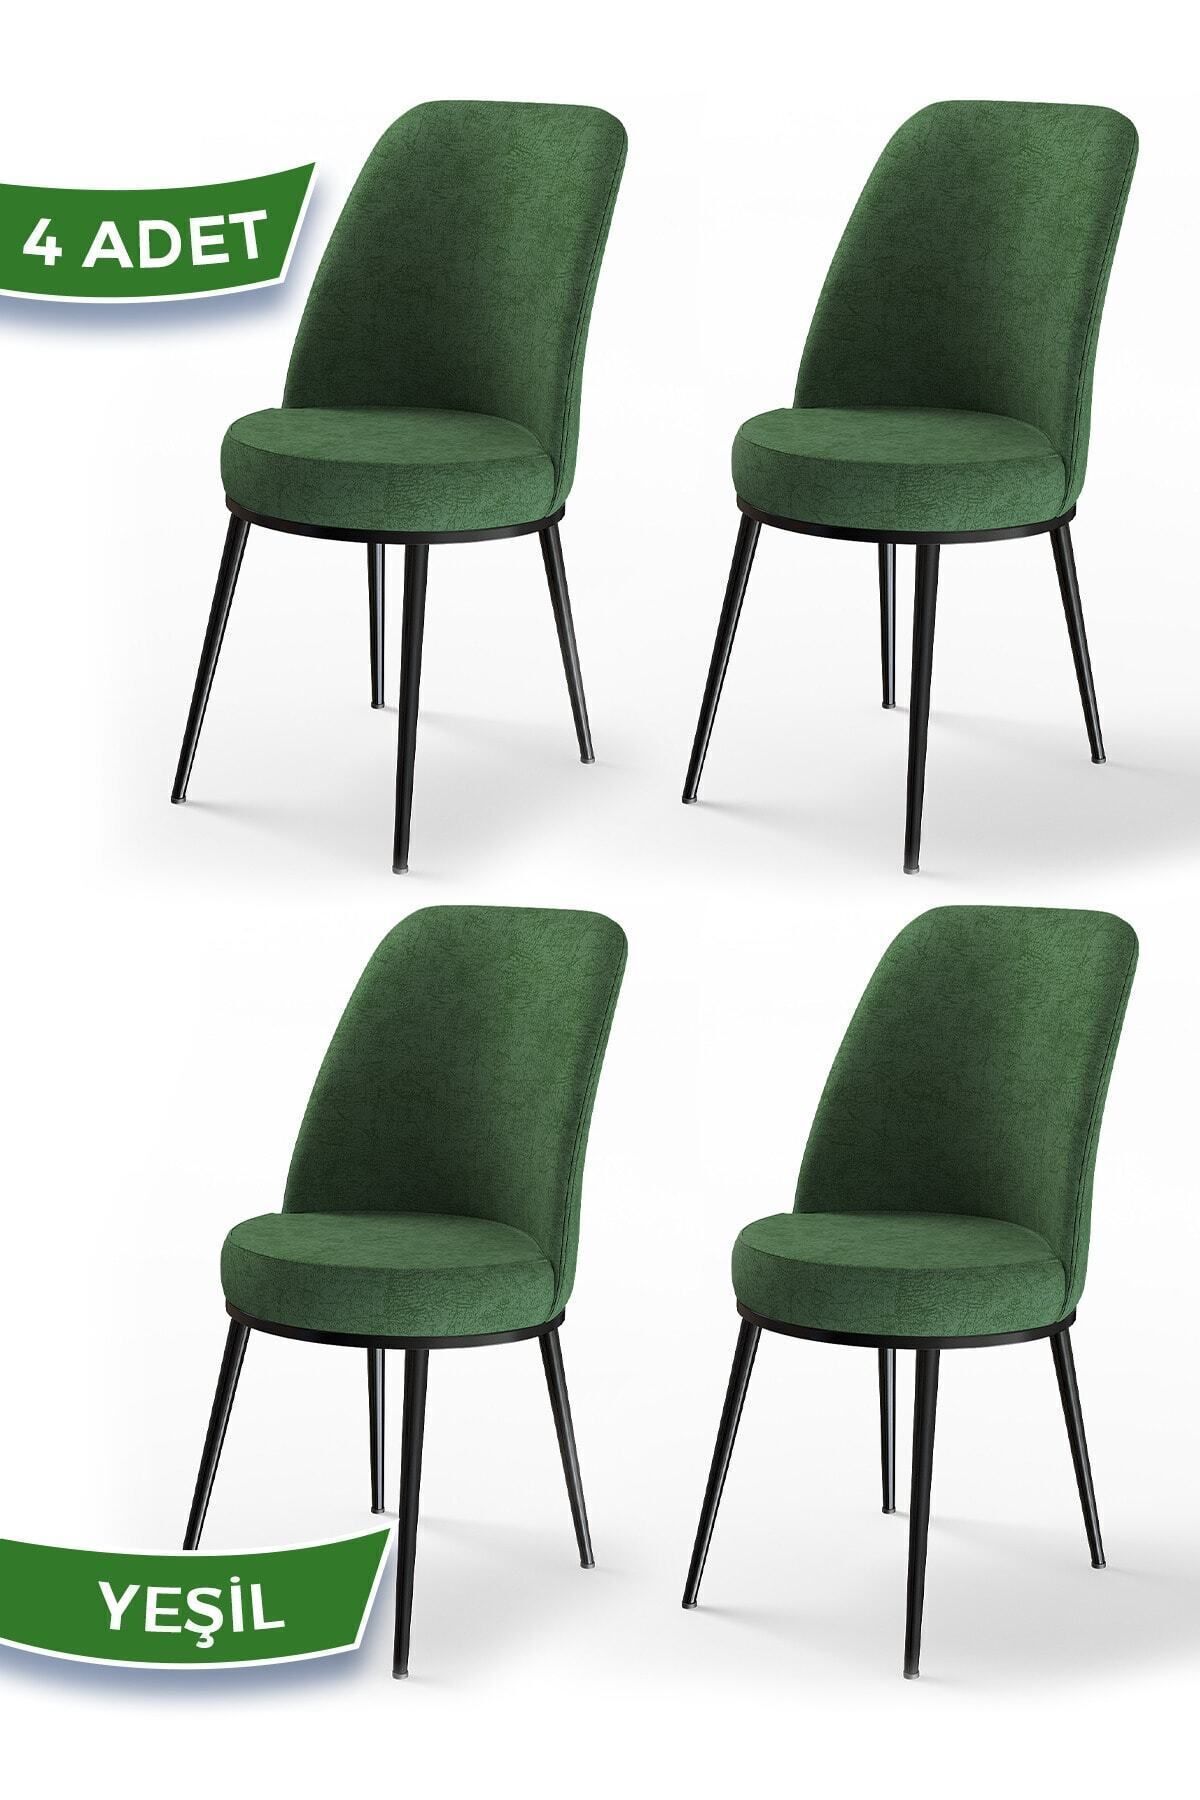 Canisa Concept Dexa Serisi Yeşil Renk 4 Adet Sandalye, Renk Yeşil, Ayaklar Siyah